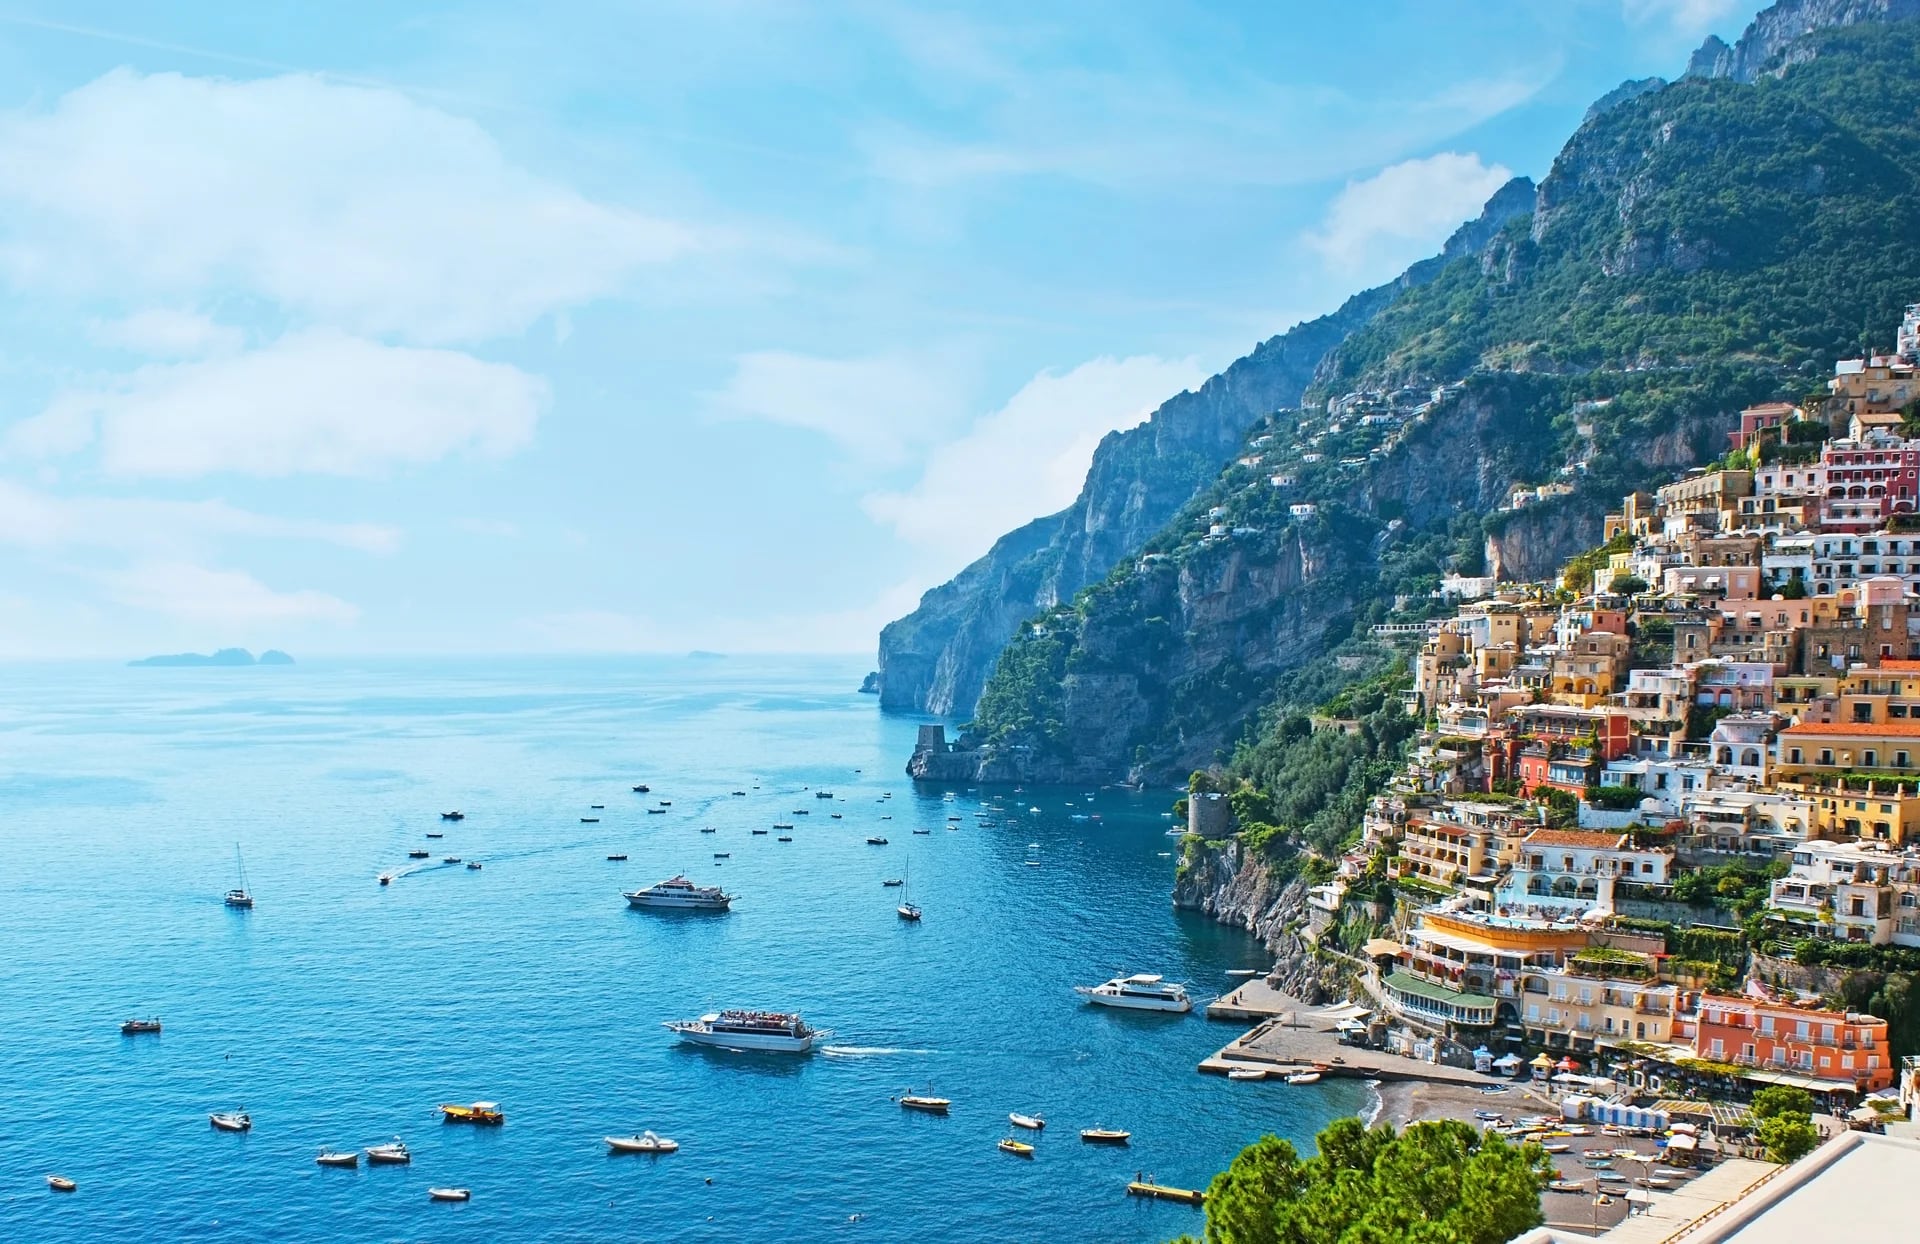 La mejor época para visitar la Costa Amalfitana es durante mayo y la primera quincena de junio (iStock)